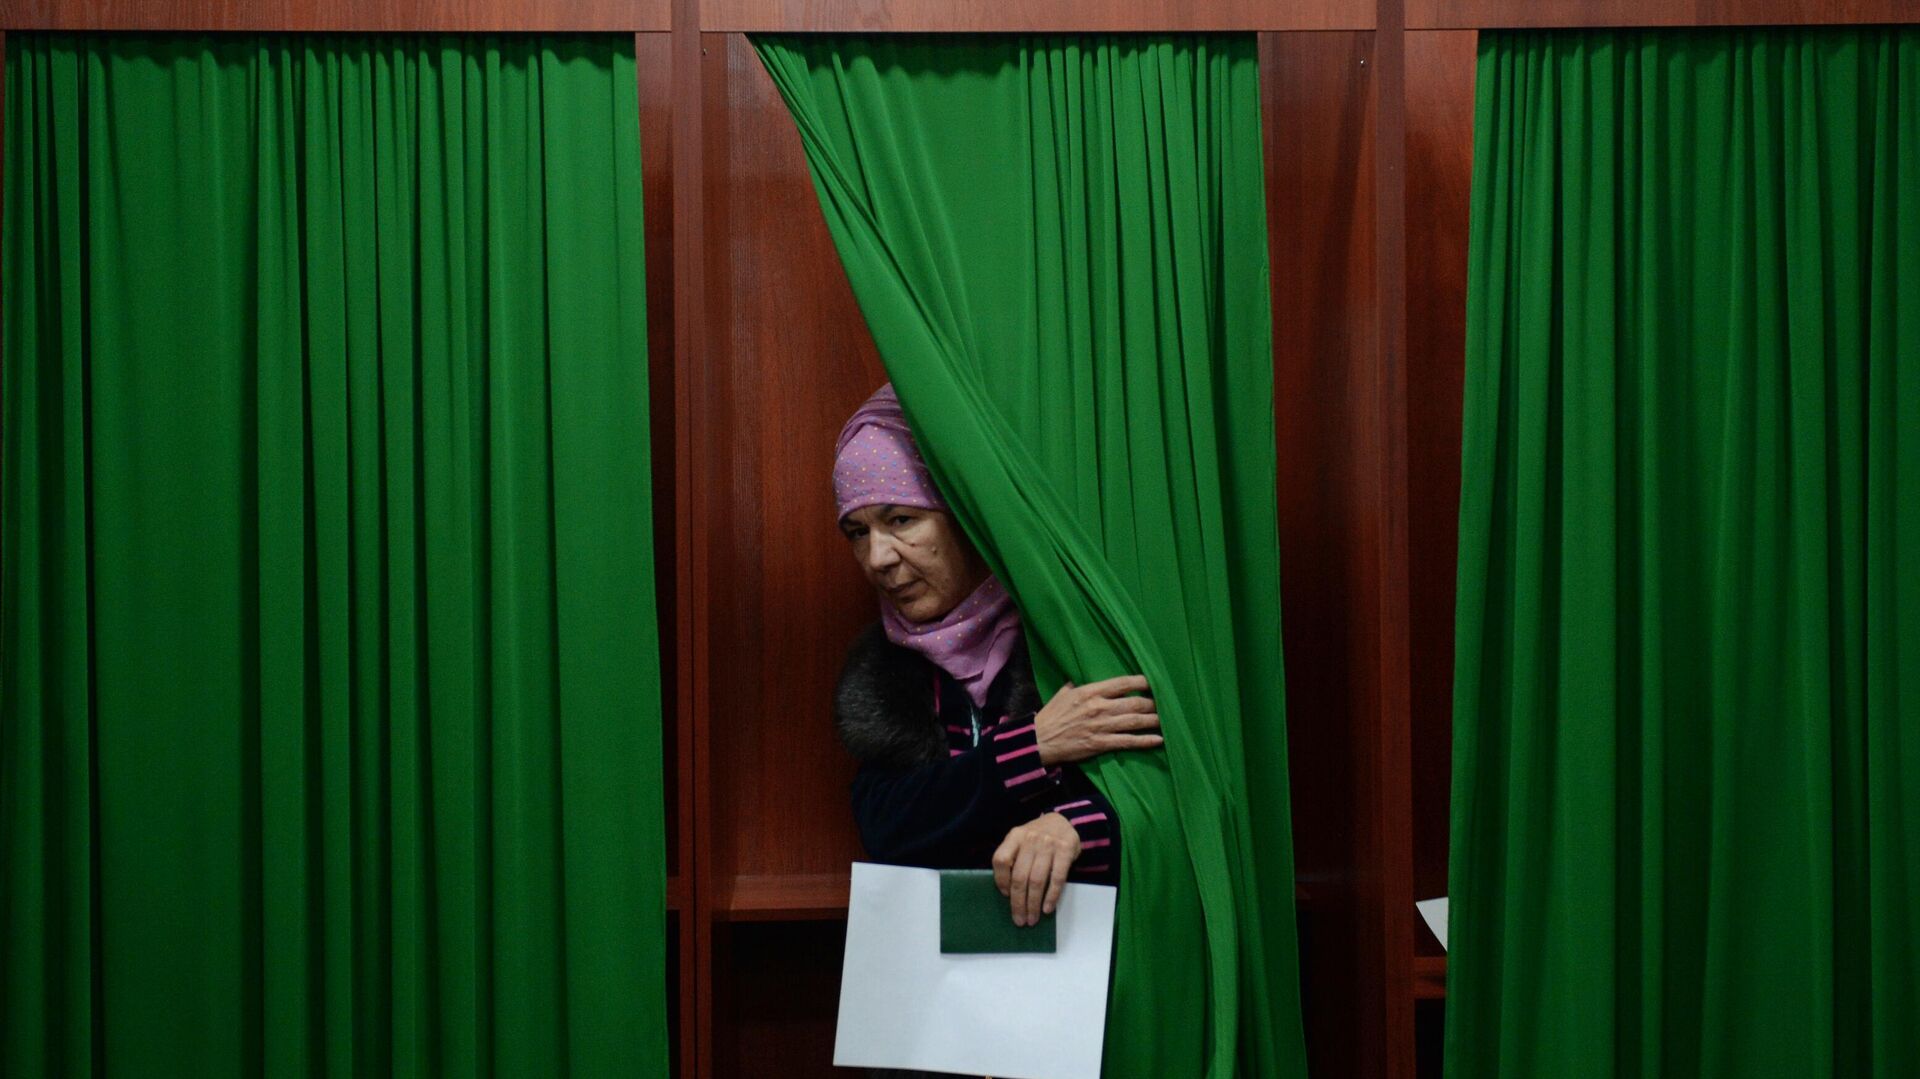 Женщина голосует на избирательном участке во время выборов президента Узбекистана, фото из архива - Sputnik Азербайджан, 1920, 24.10.2021